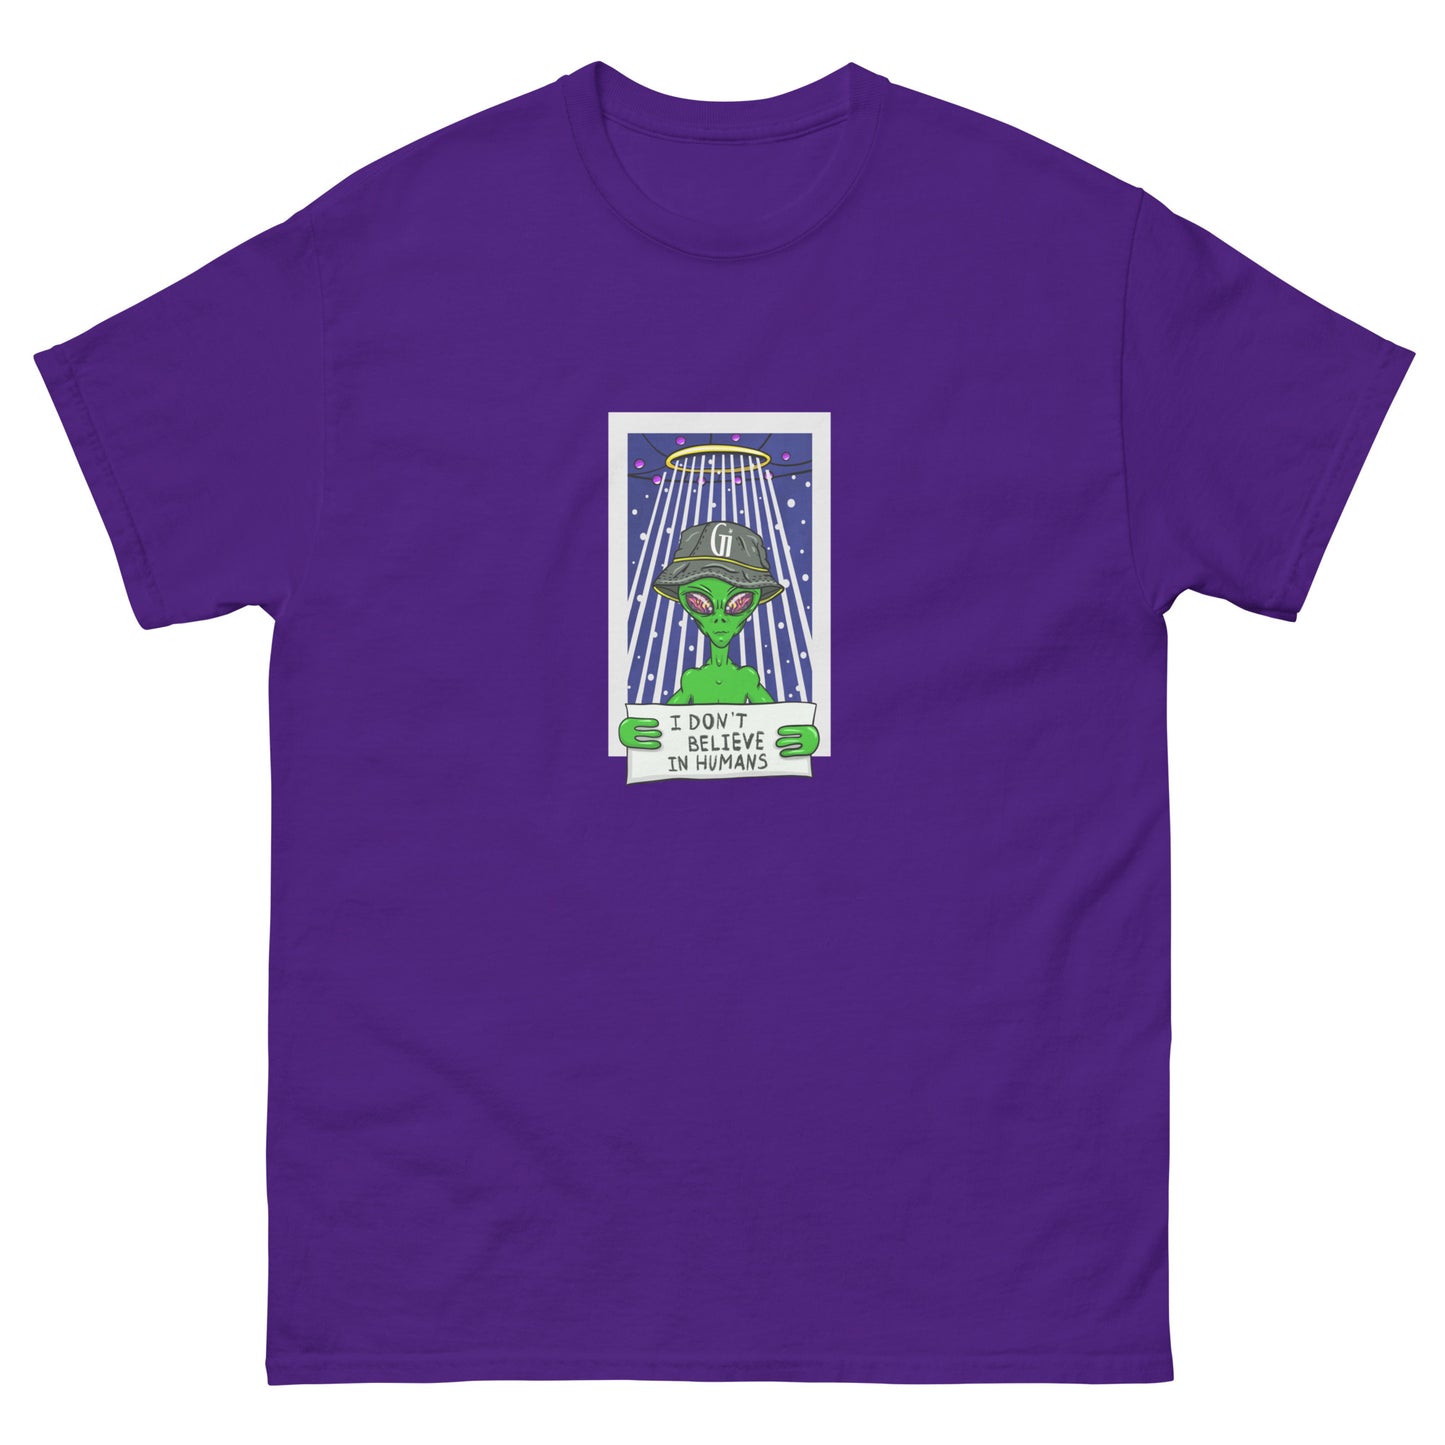 purple color cotton t shirt with stylish alien